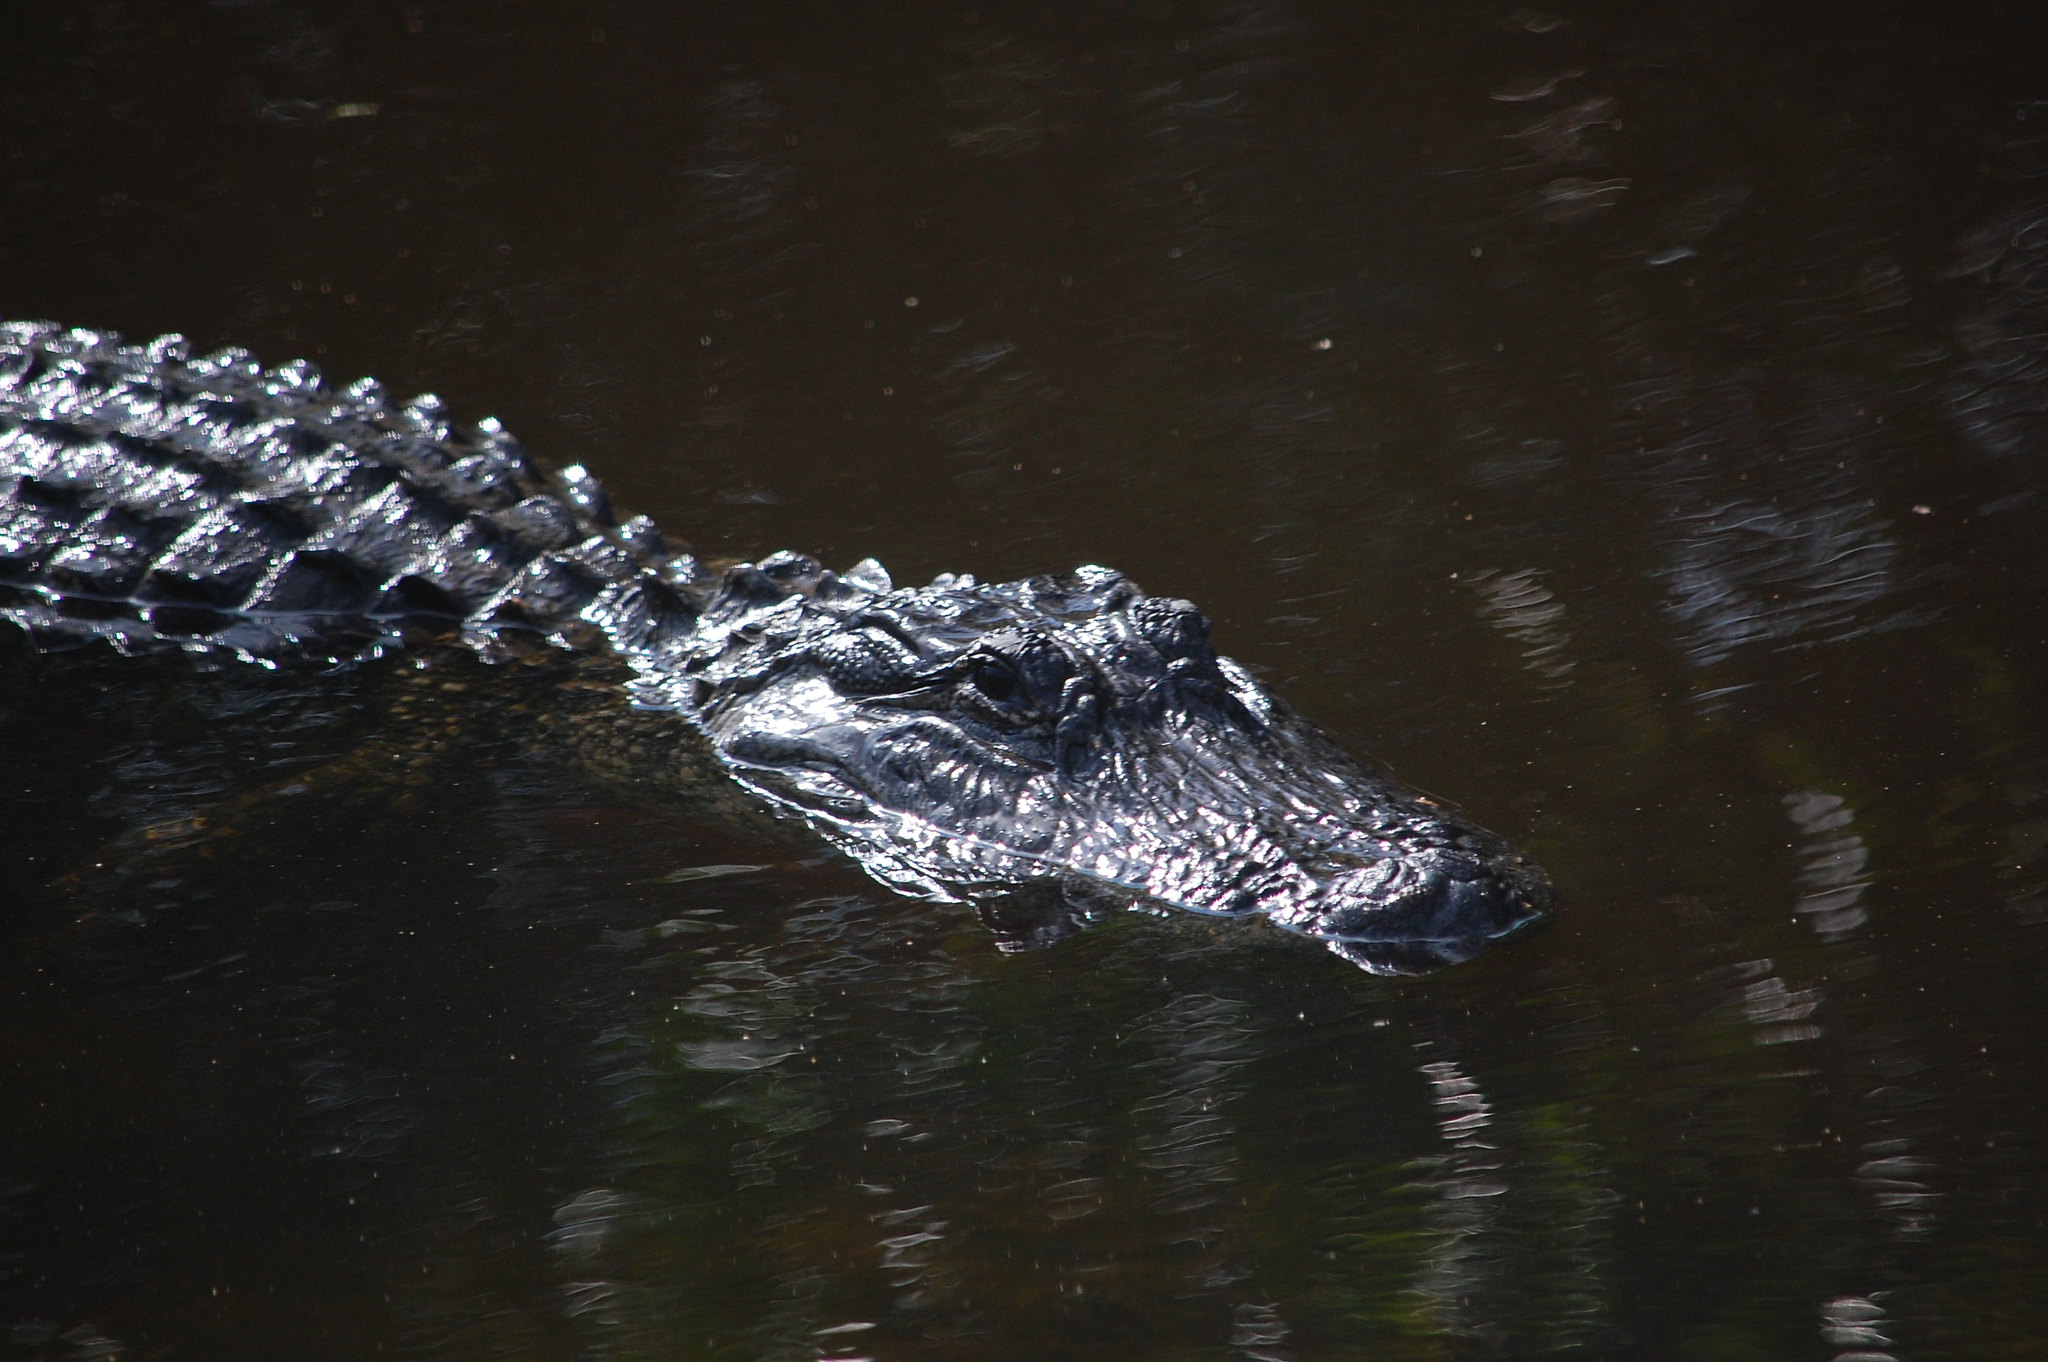 FWC gator in water